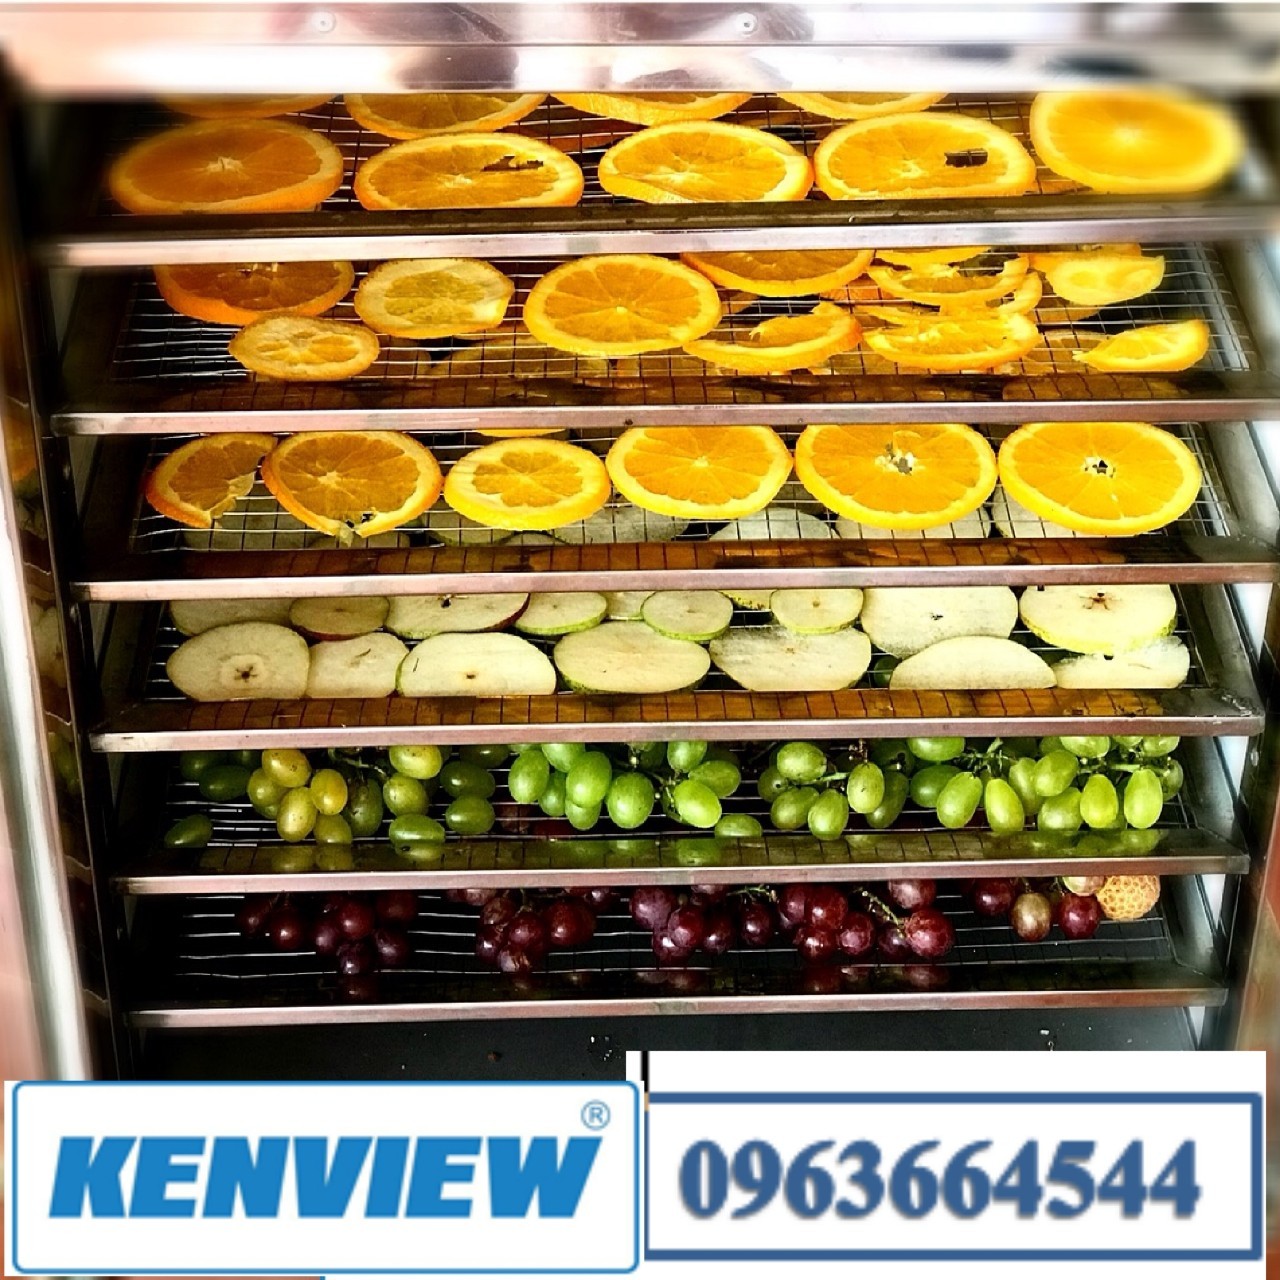 Kenview cung cấp máy sấy hoa quả công nghiệp ở Bình Tân